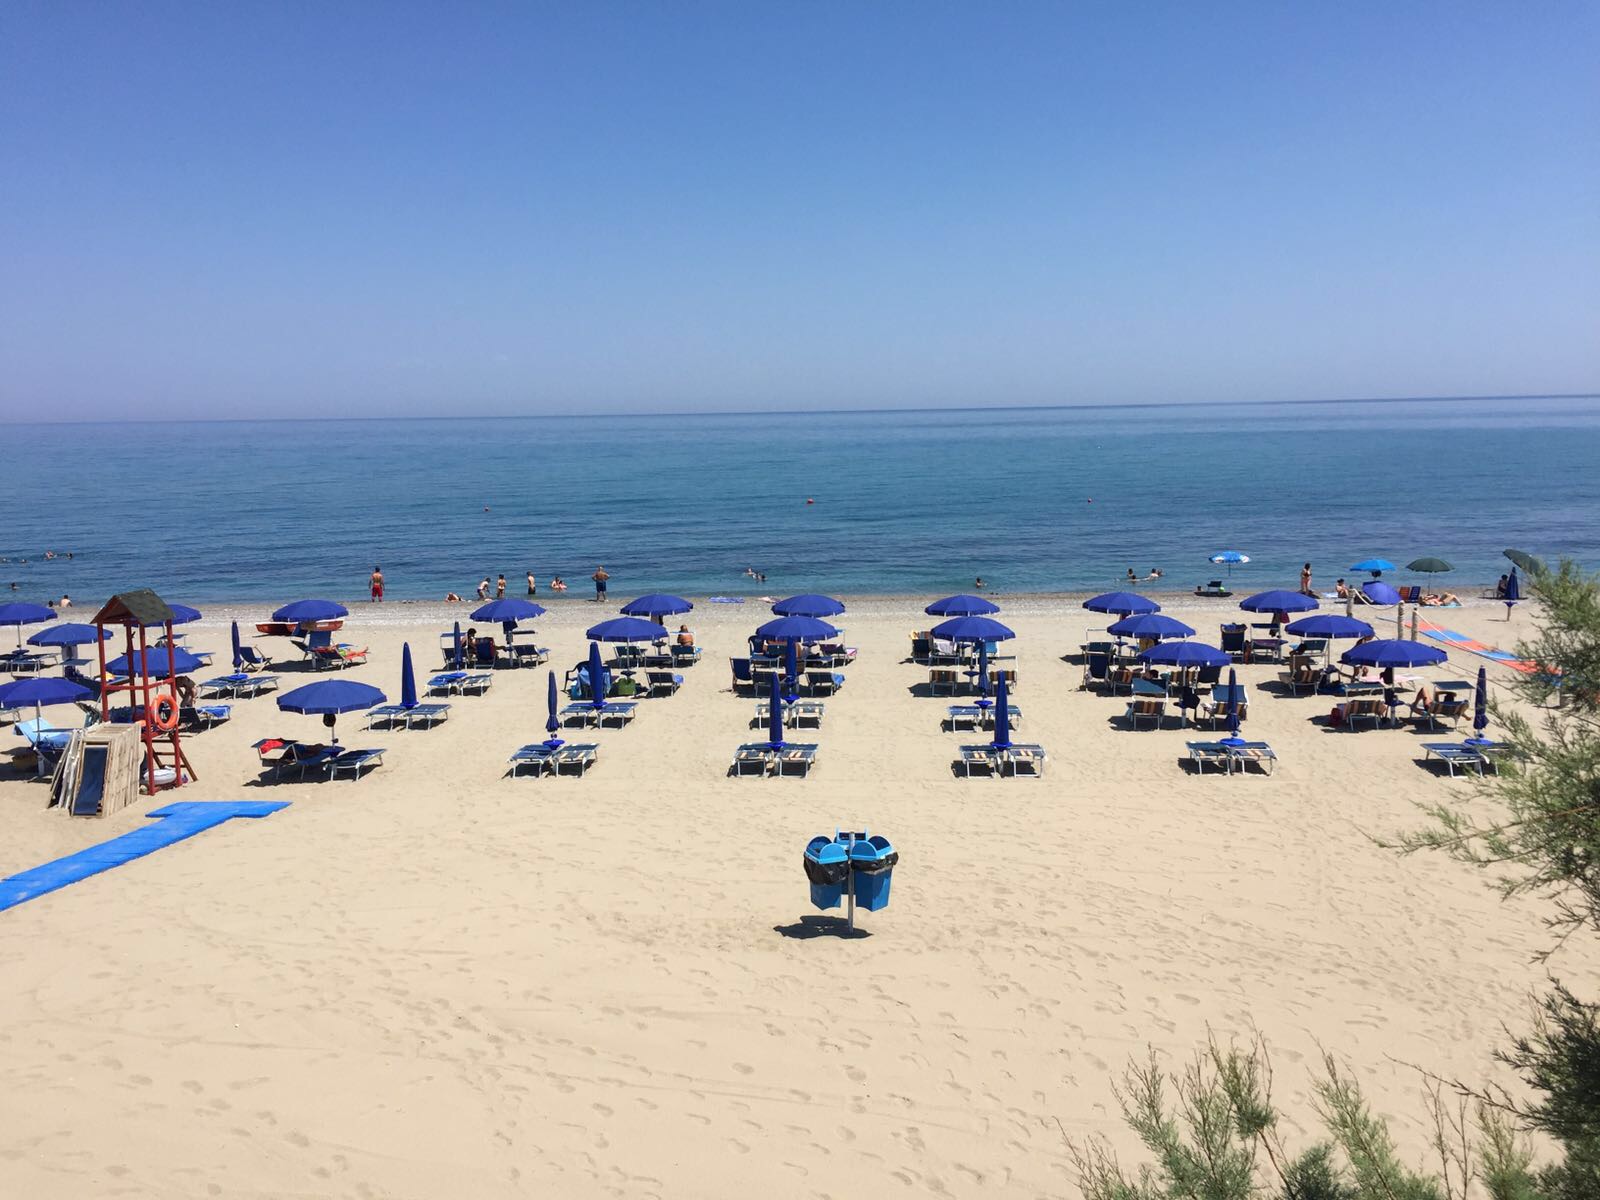 Mandatoriccio-Campana beach'in fotoğrafı kahverengi kum yüzey ile